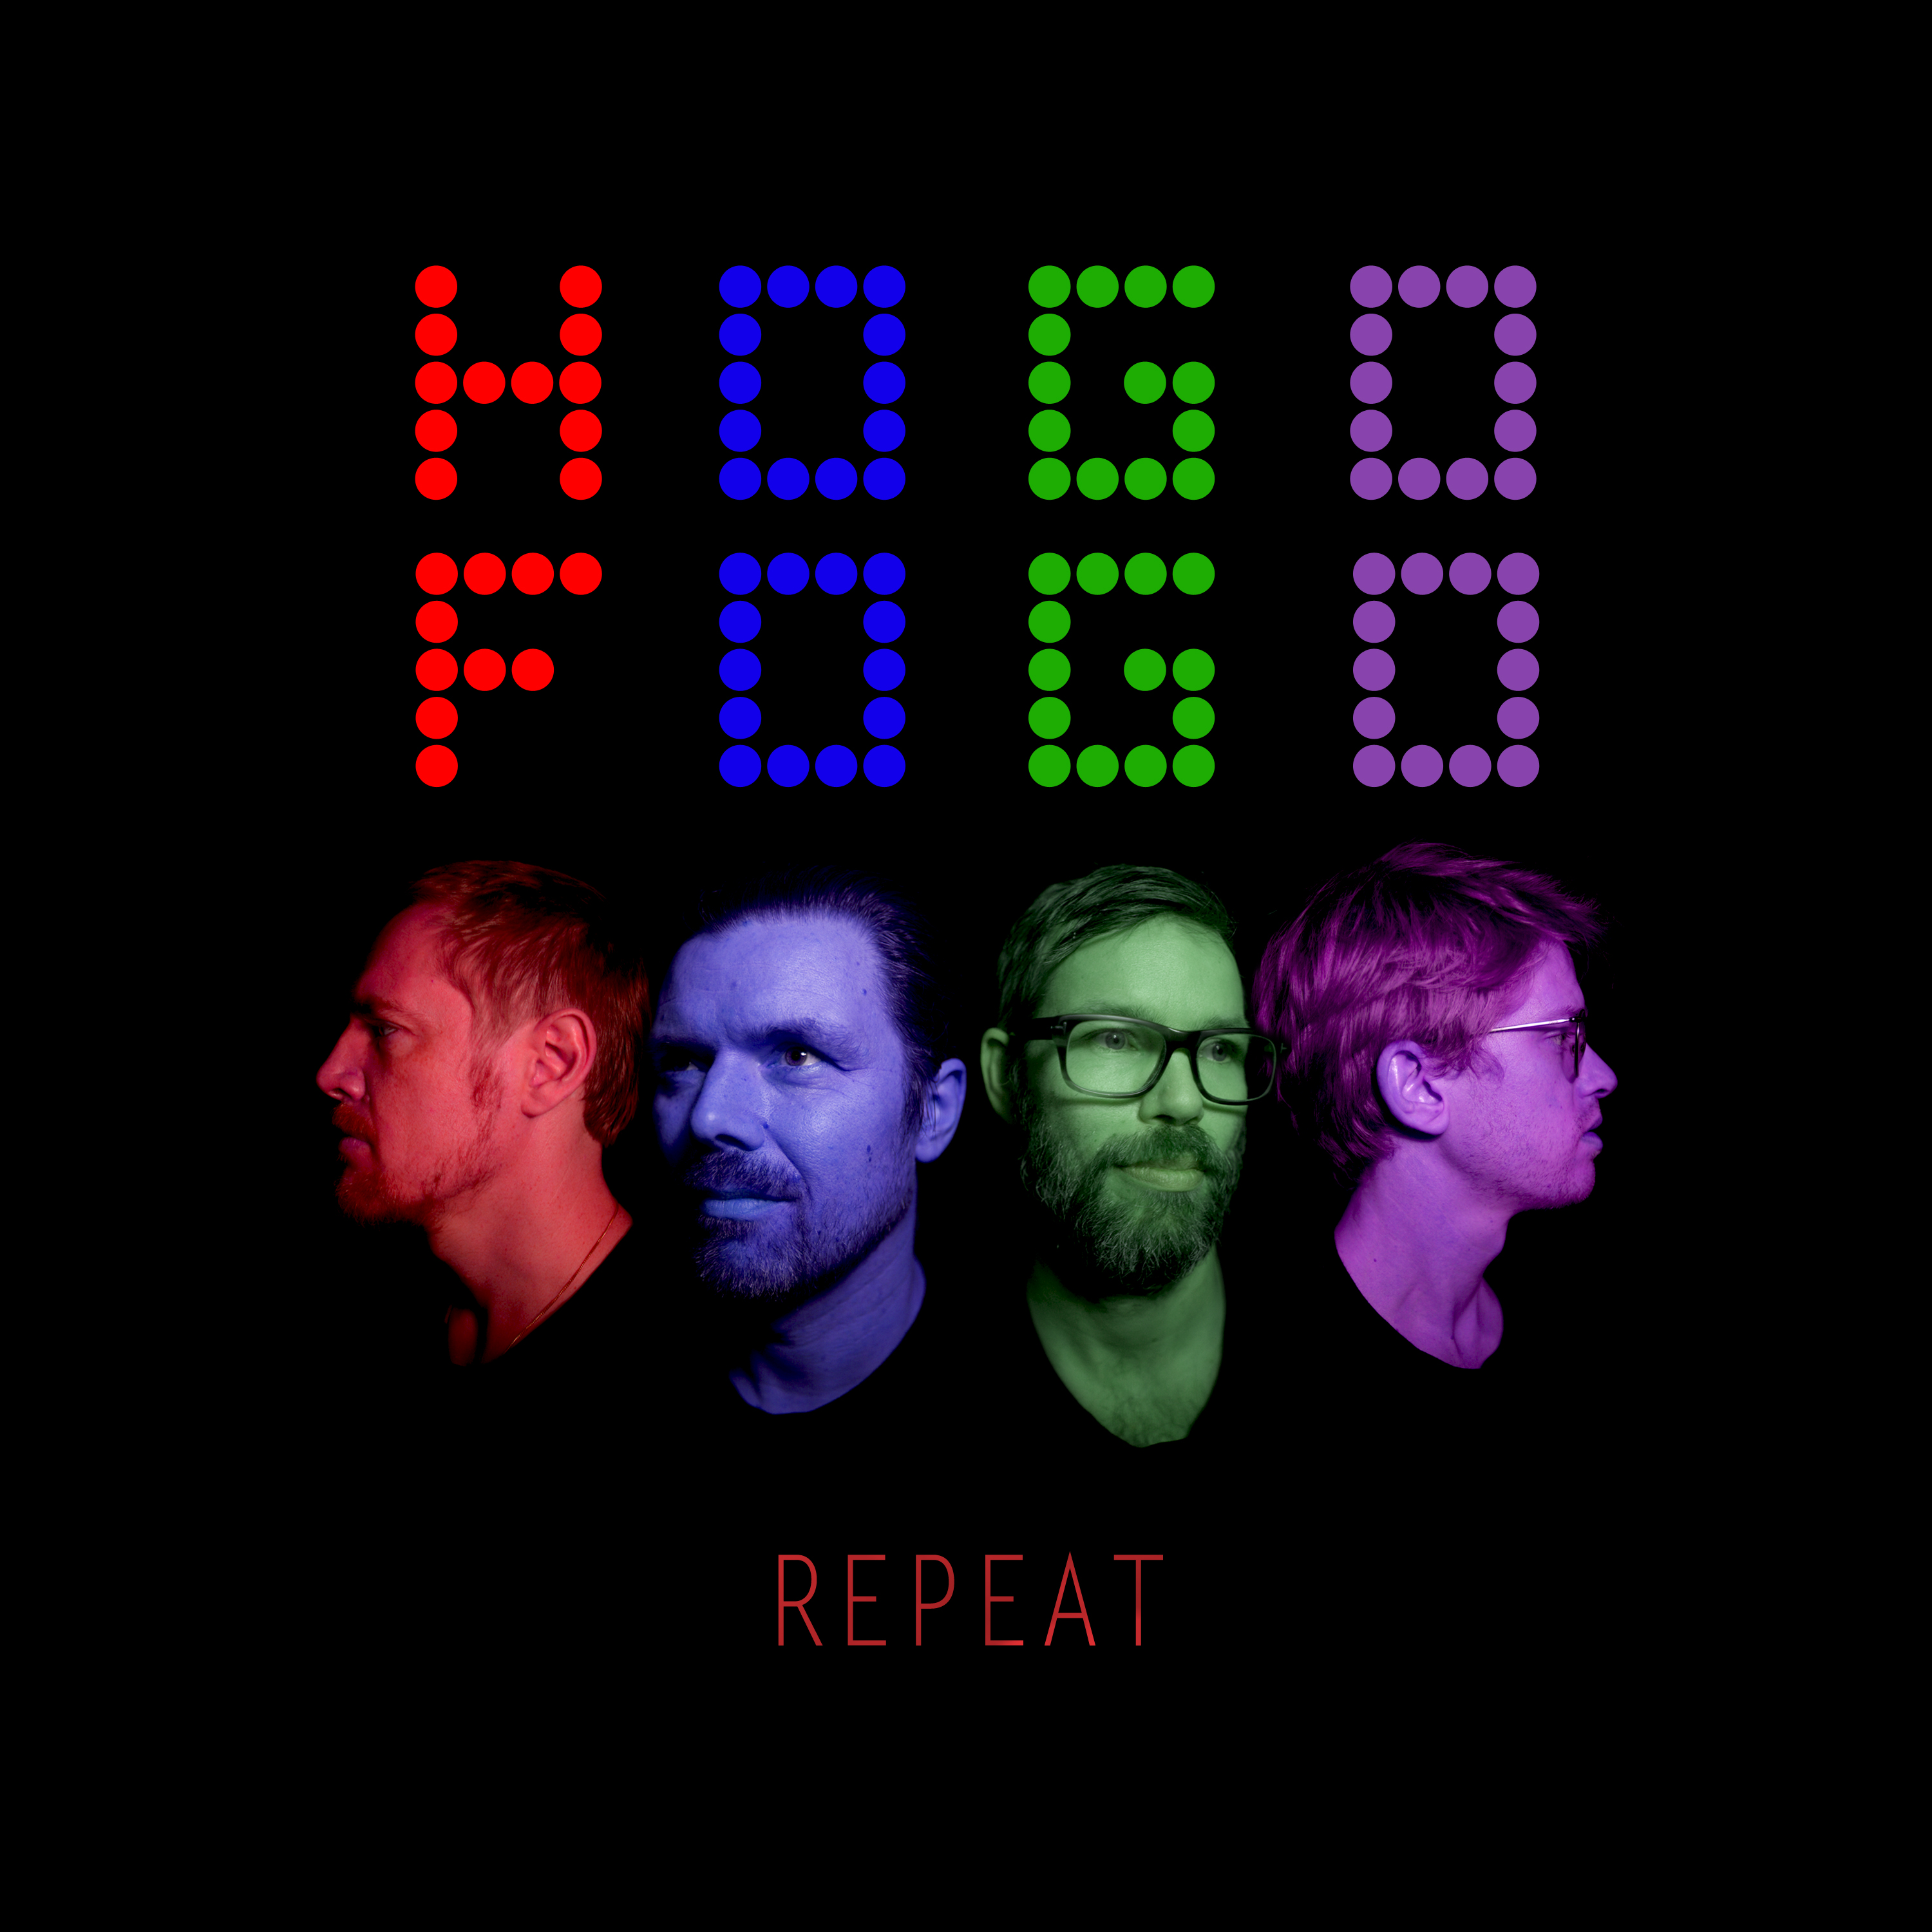 Four faces album cover